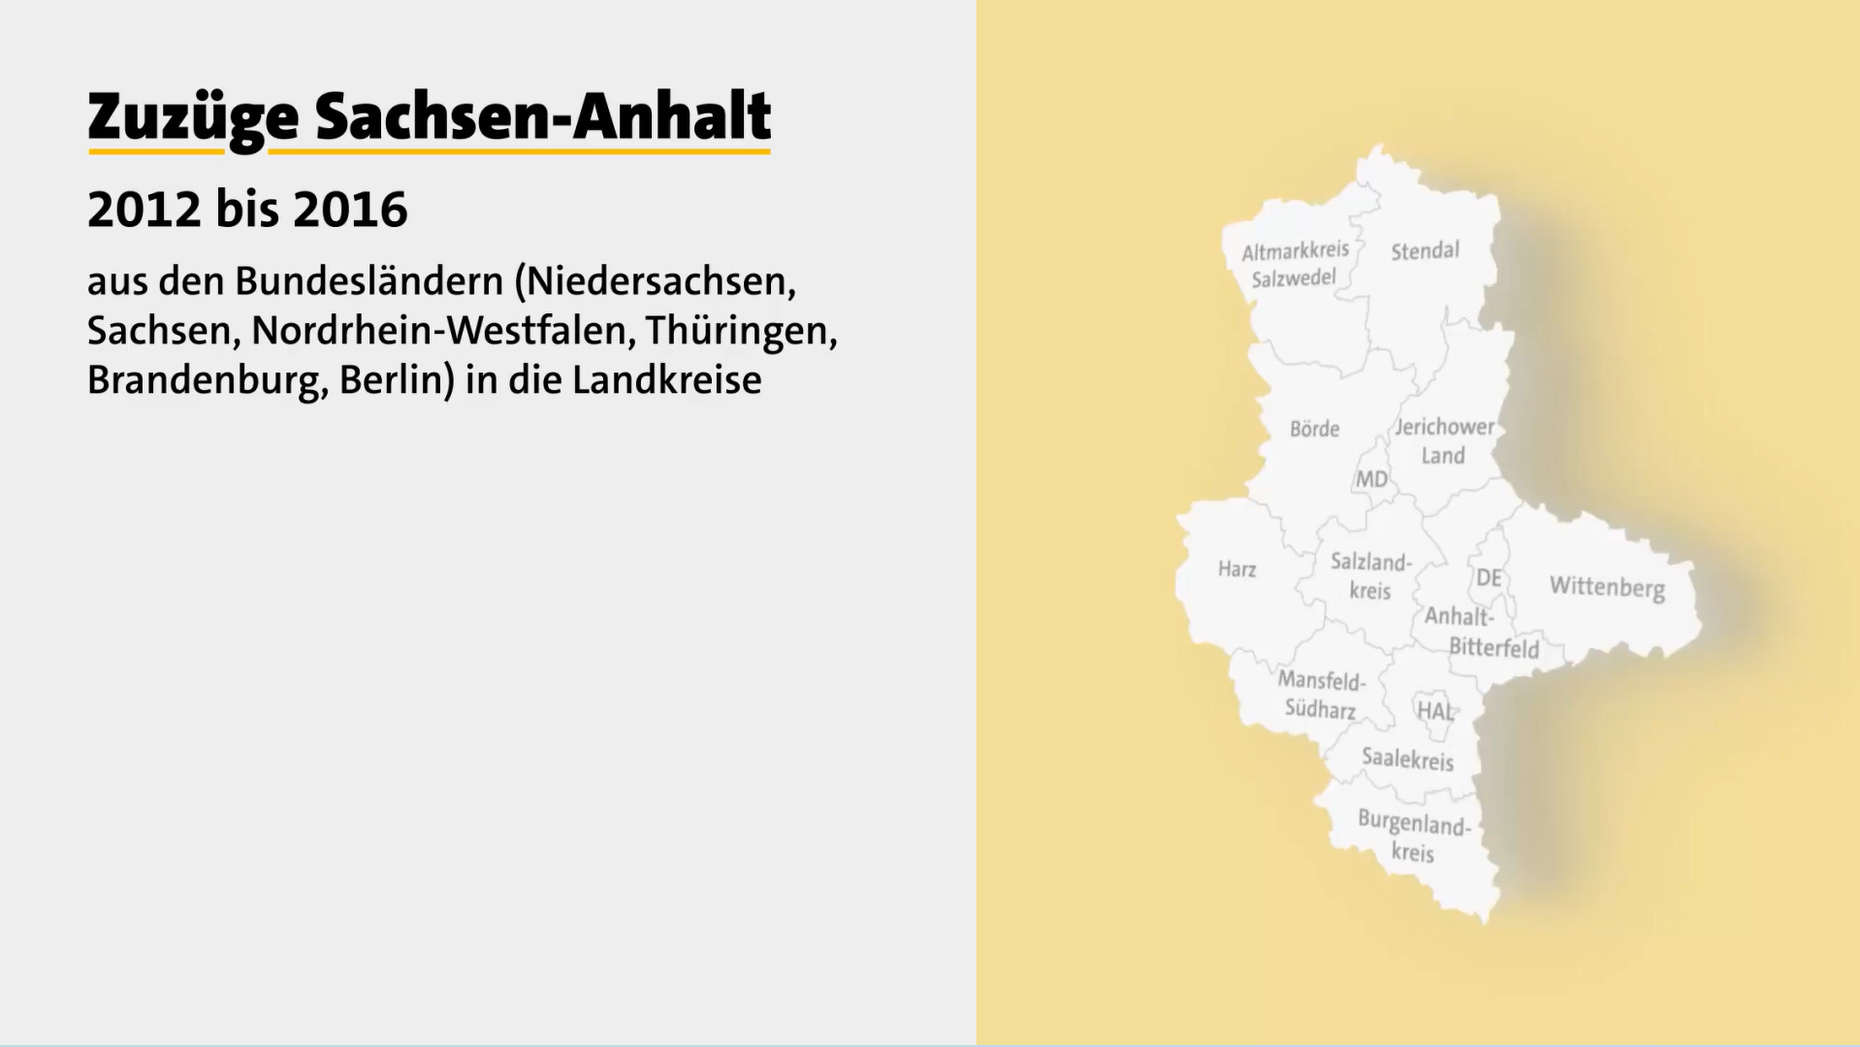 Startbild des Videos zu Zuzügen Sachsen-Anhalts 2012–2016